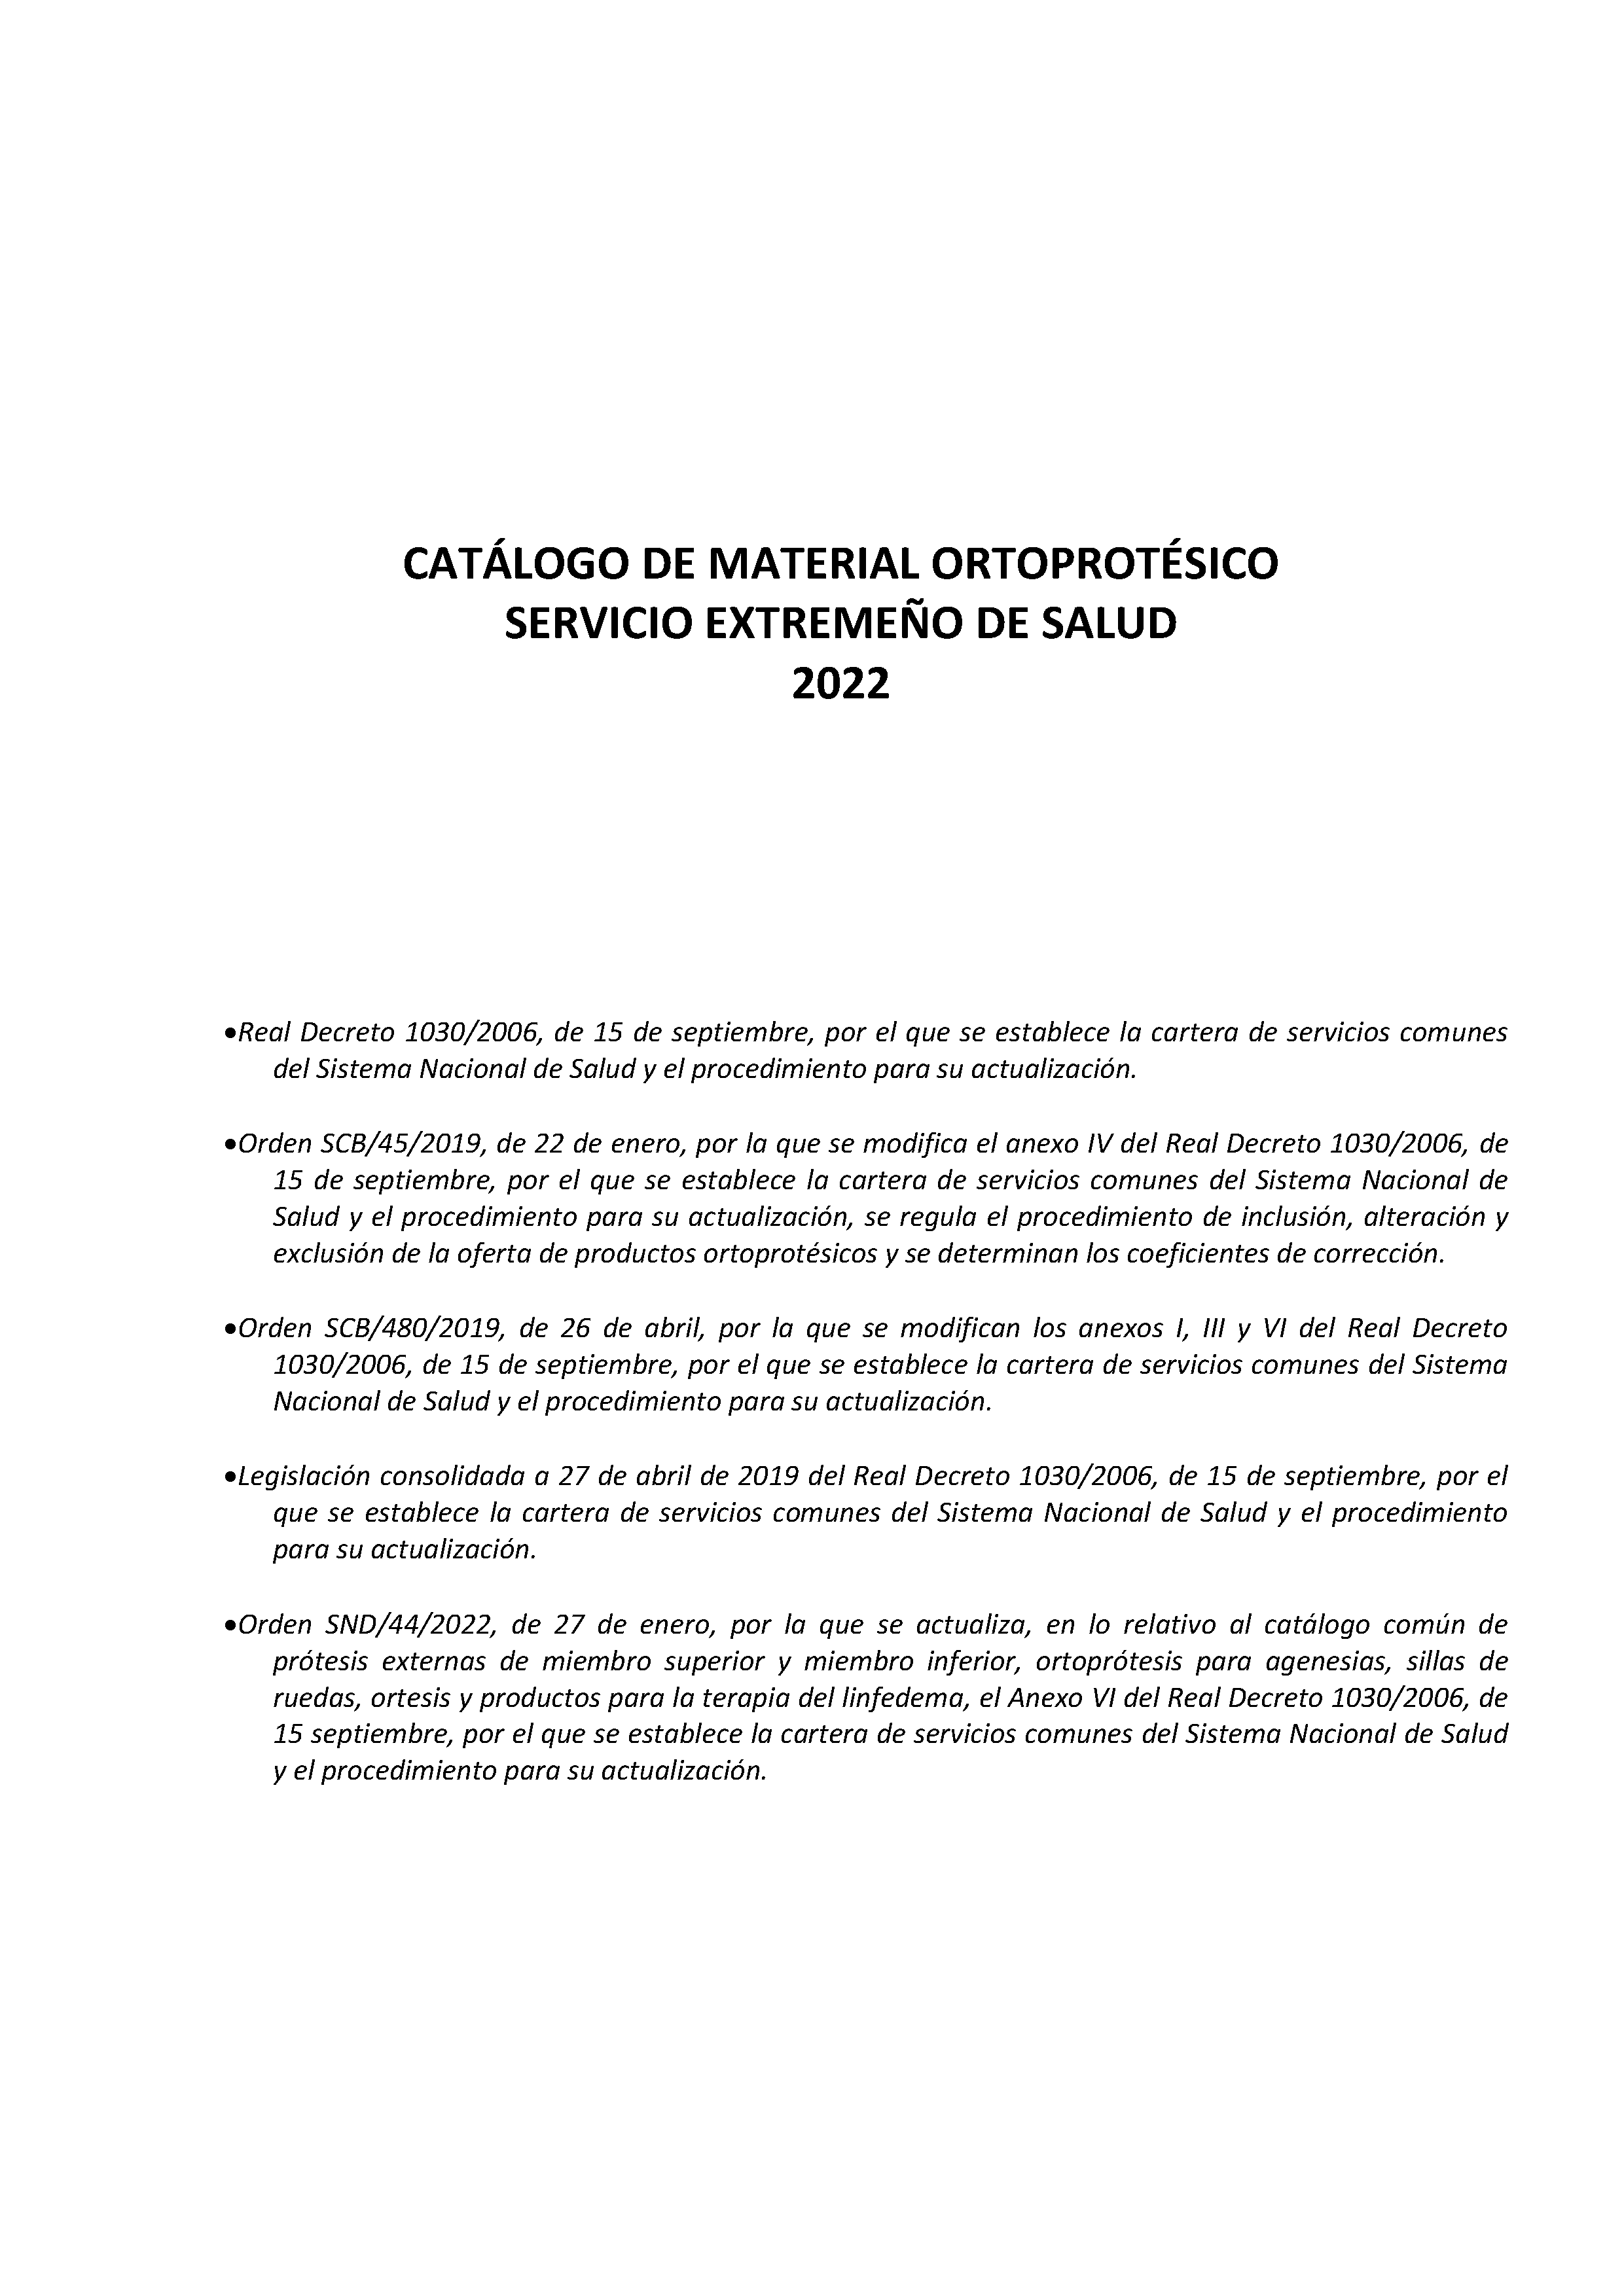 CATÁLOGO DE MATERIAL ORTOPROTÉSICO SERVICIO EXTREMEÑO DE SALUD 2022 Pag 1